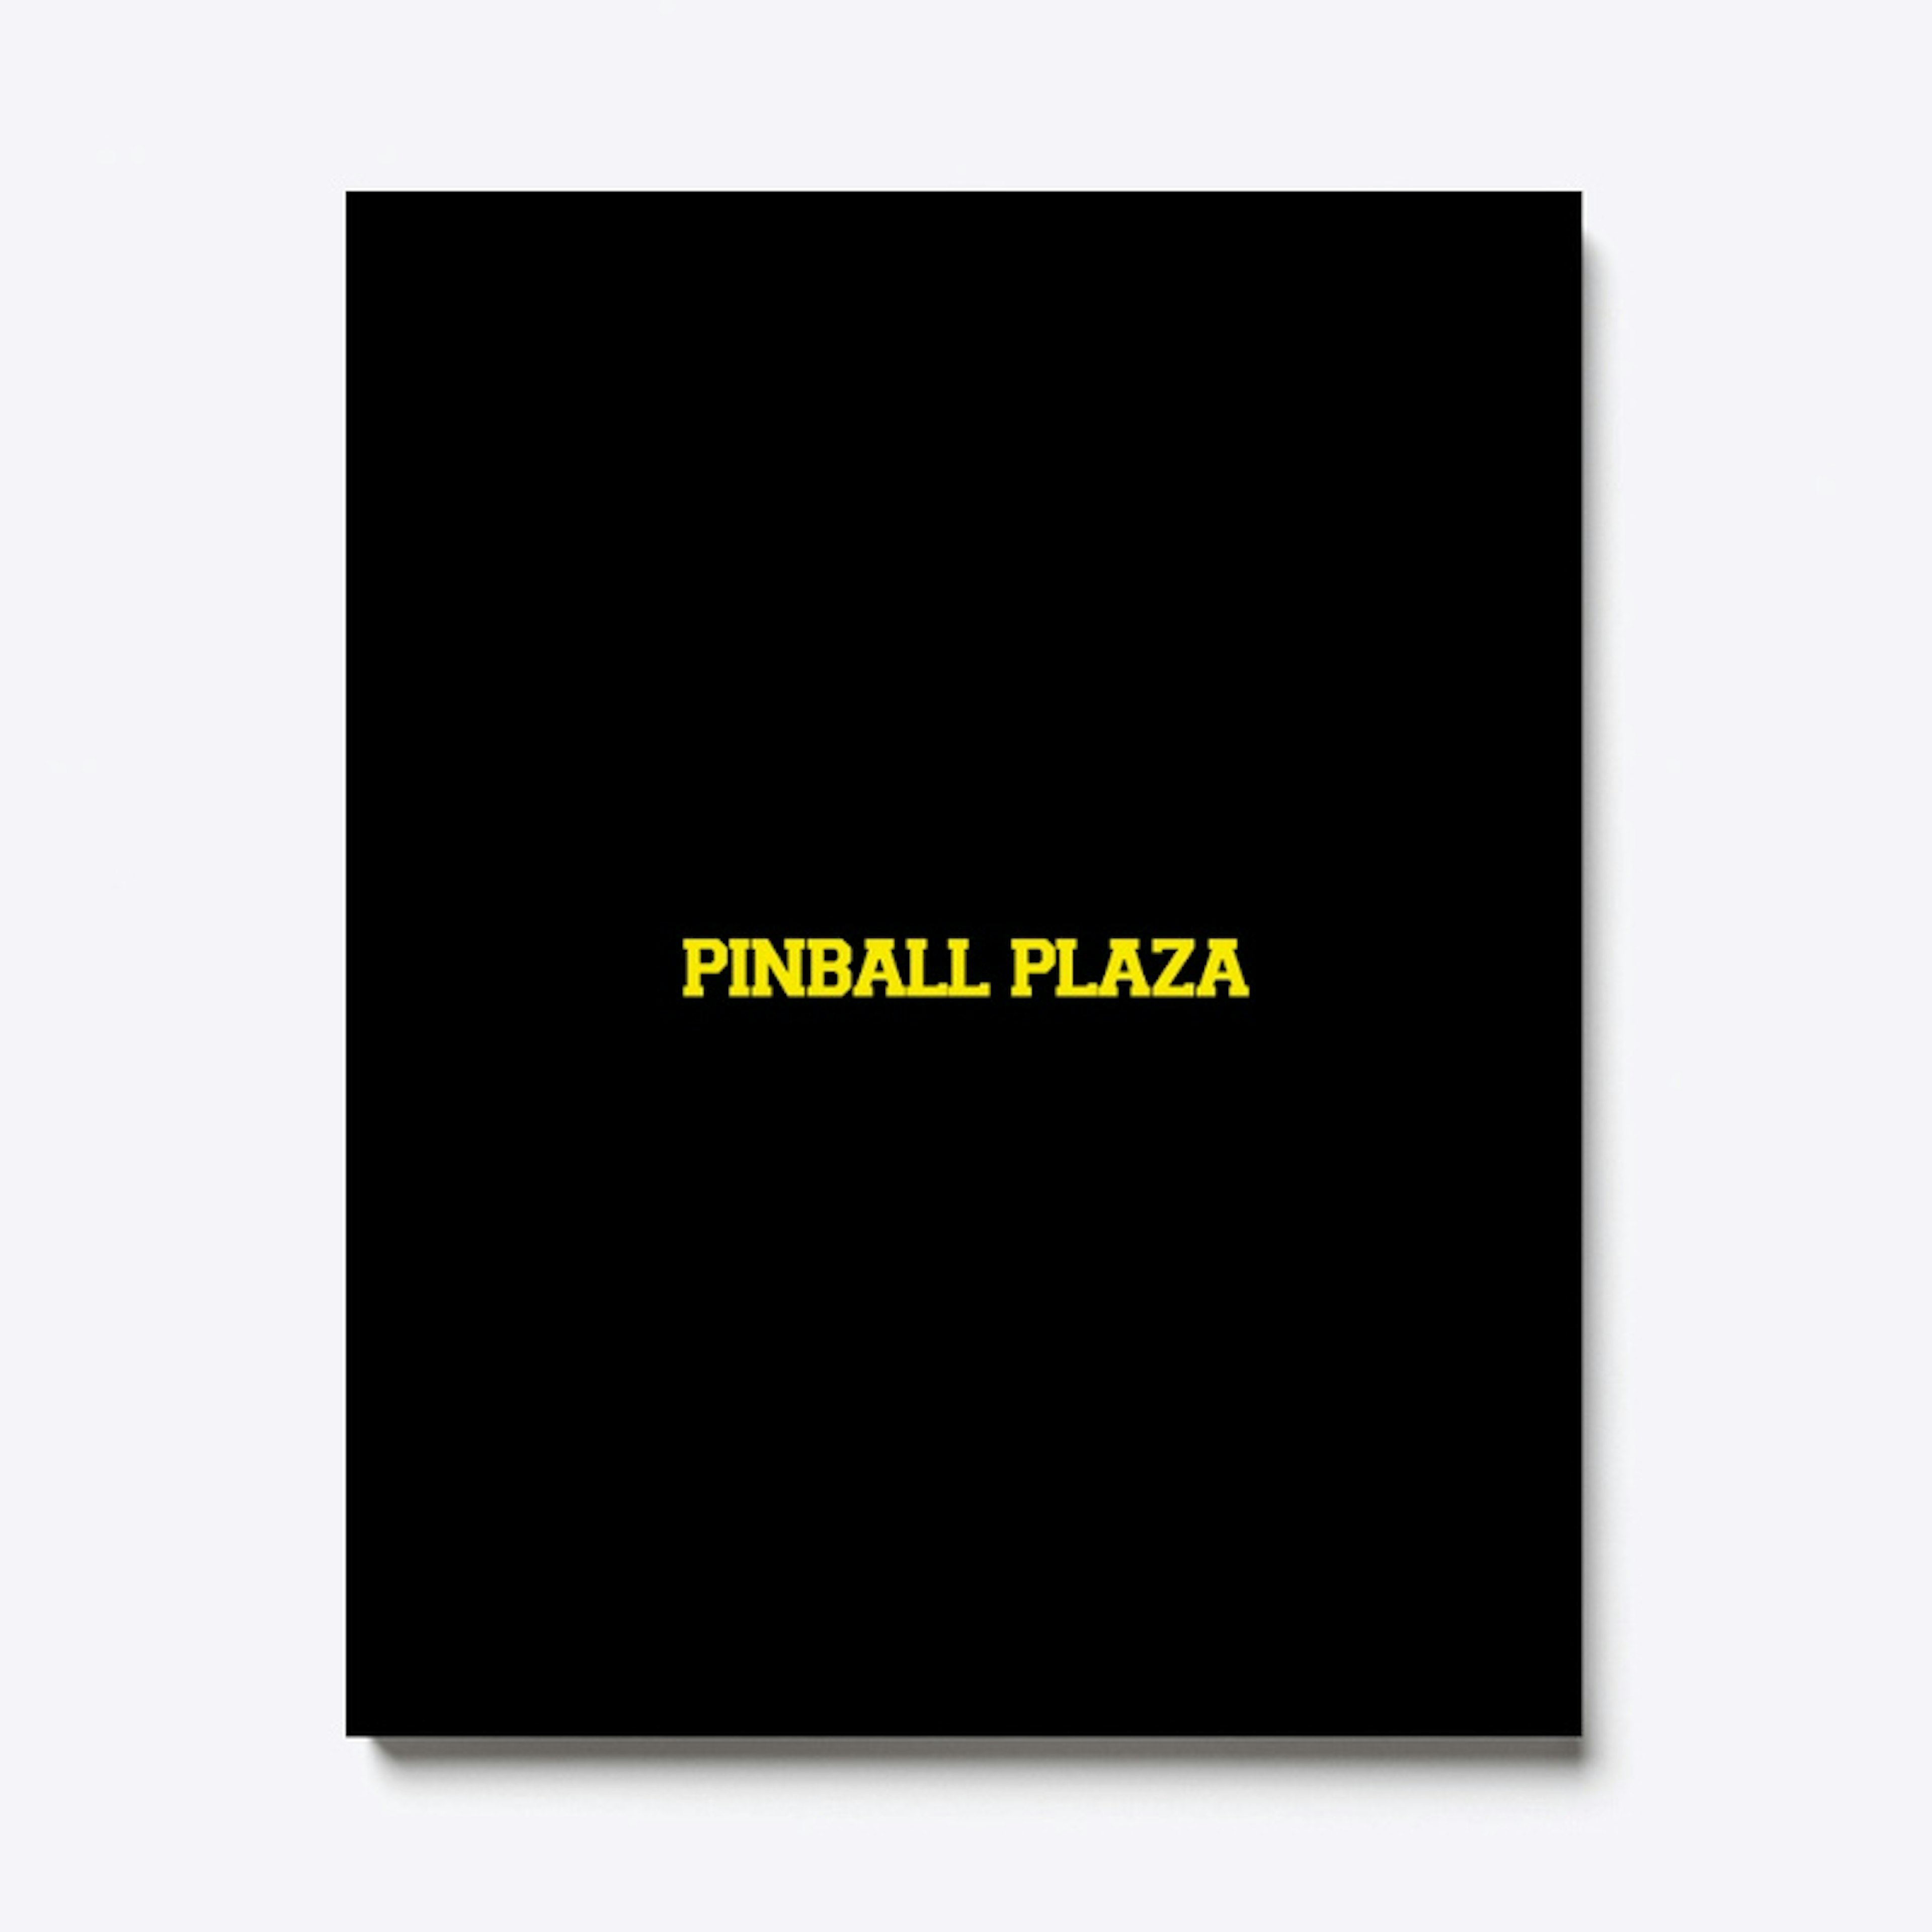 Pinball Plaza